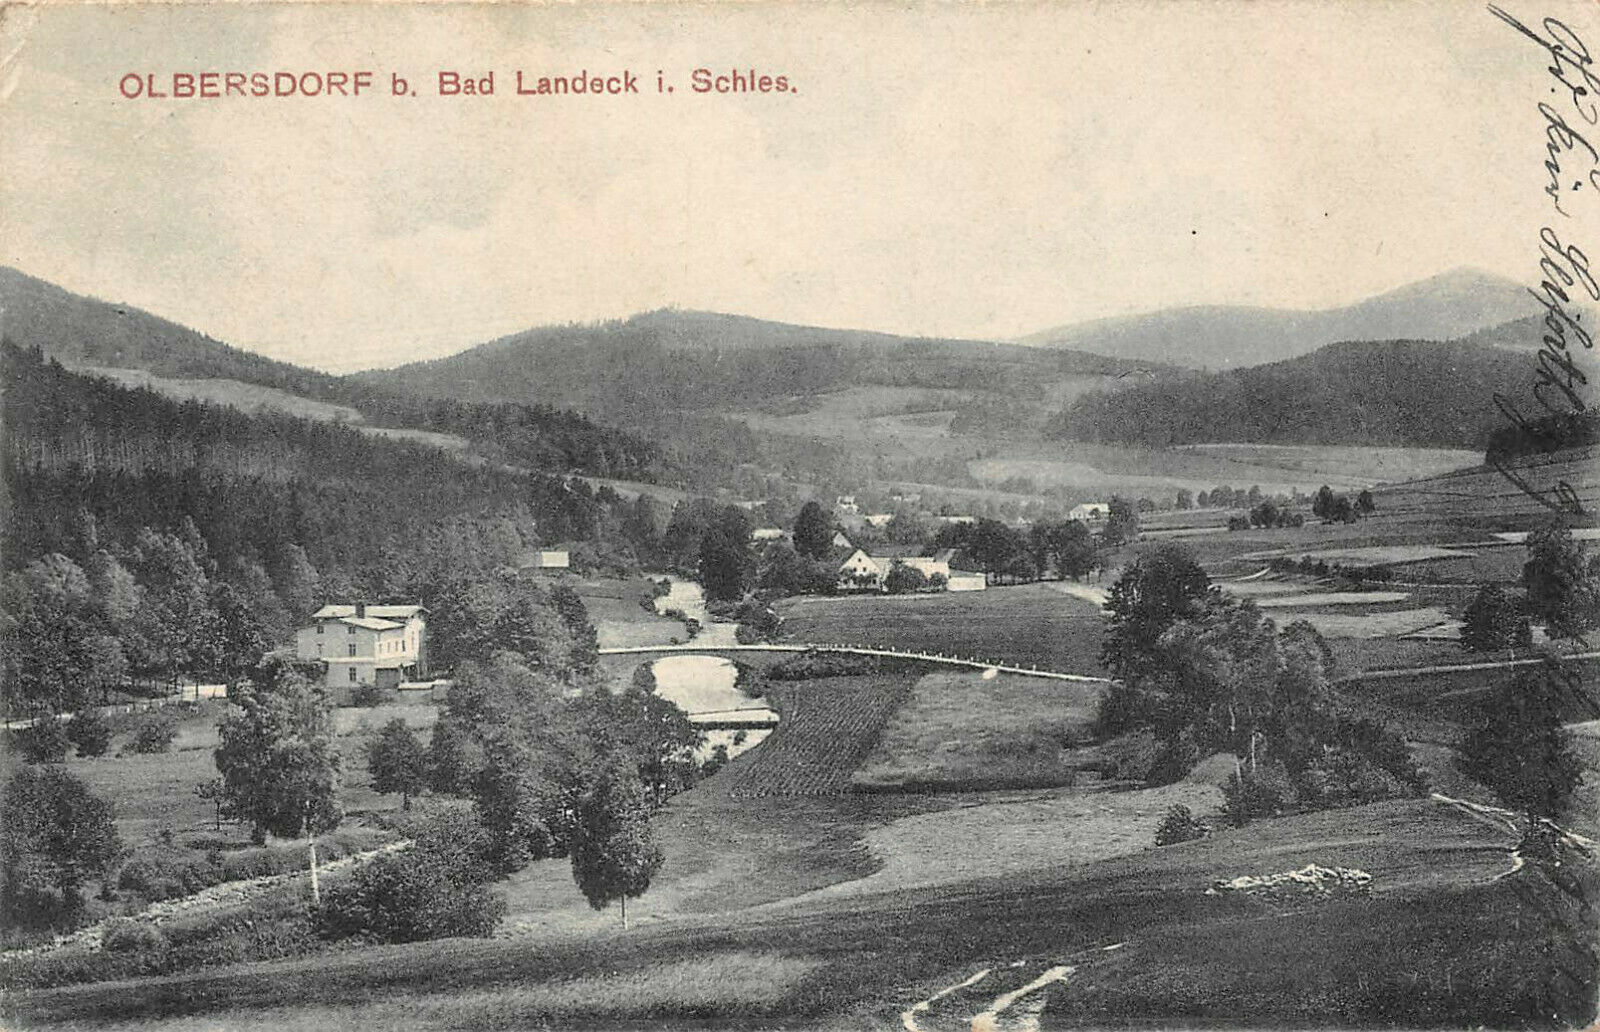 Olbersdorf bei Bad Landeck i. Schles., Postkarte von 1910